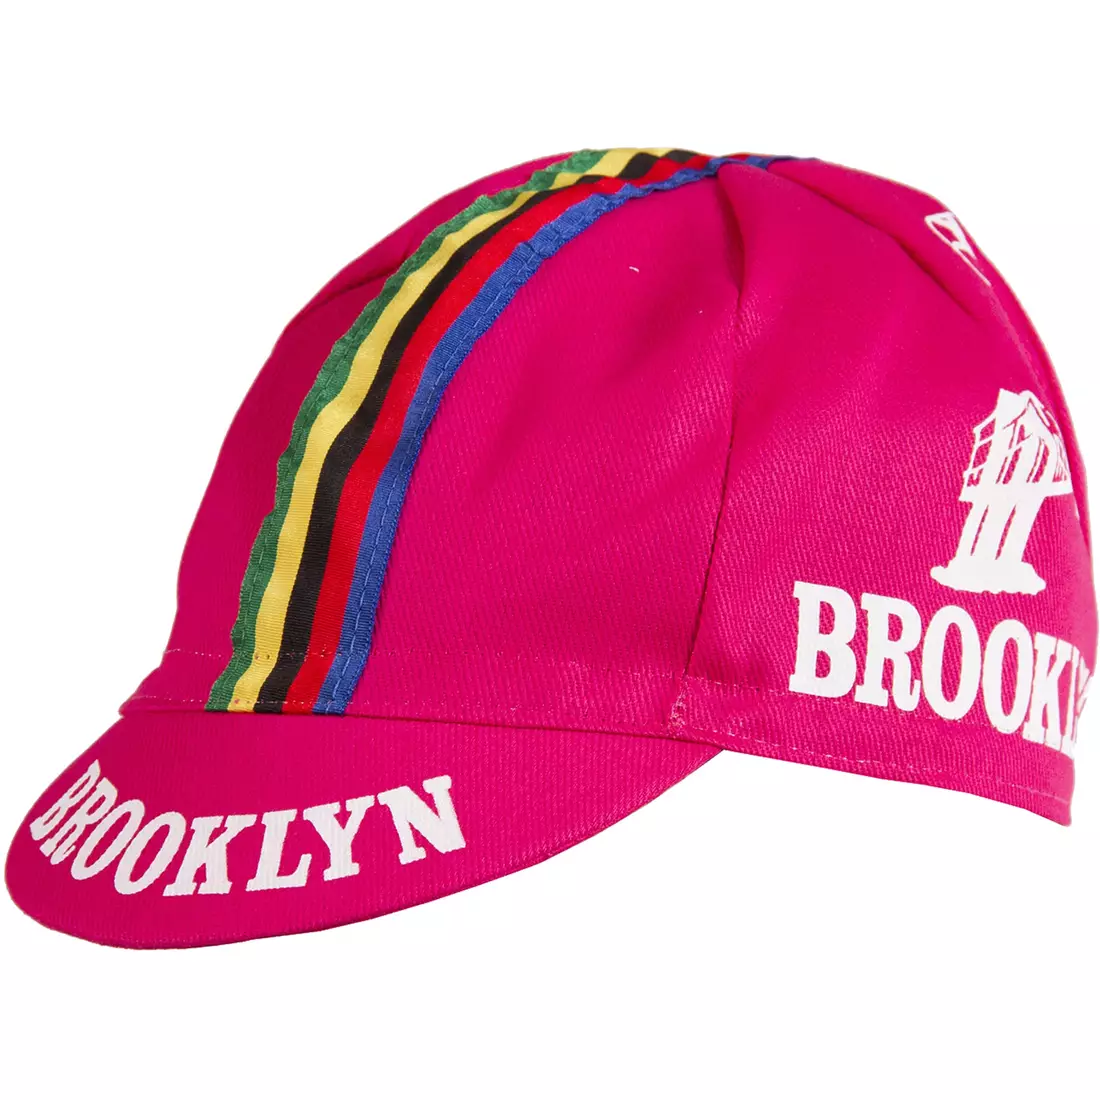 GIORDANA SS18 kerékpáros sapka - Brooklyn - Rózsaszín csíkos szalaggal GI-S6-COCA-BROK-PINK egy méret